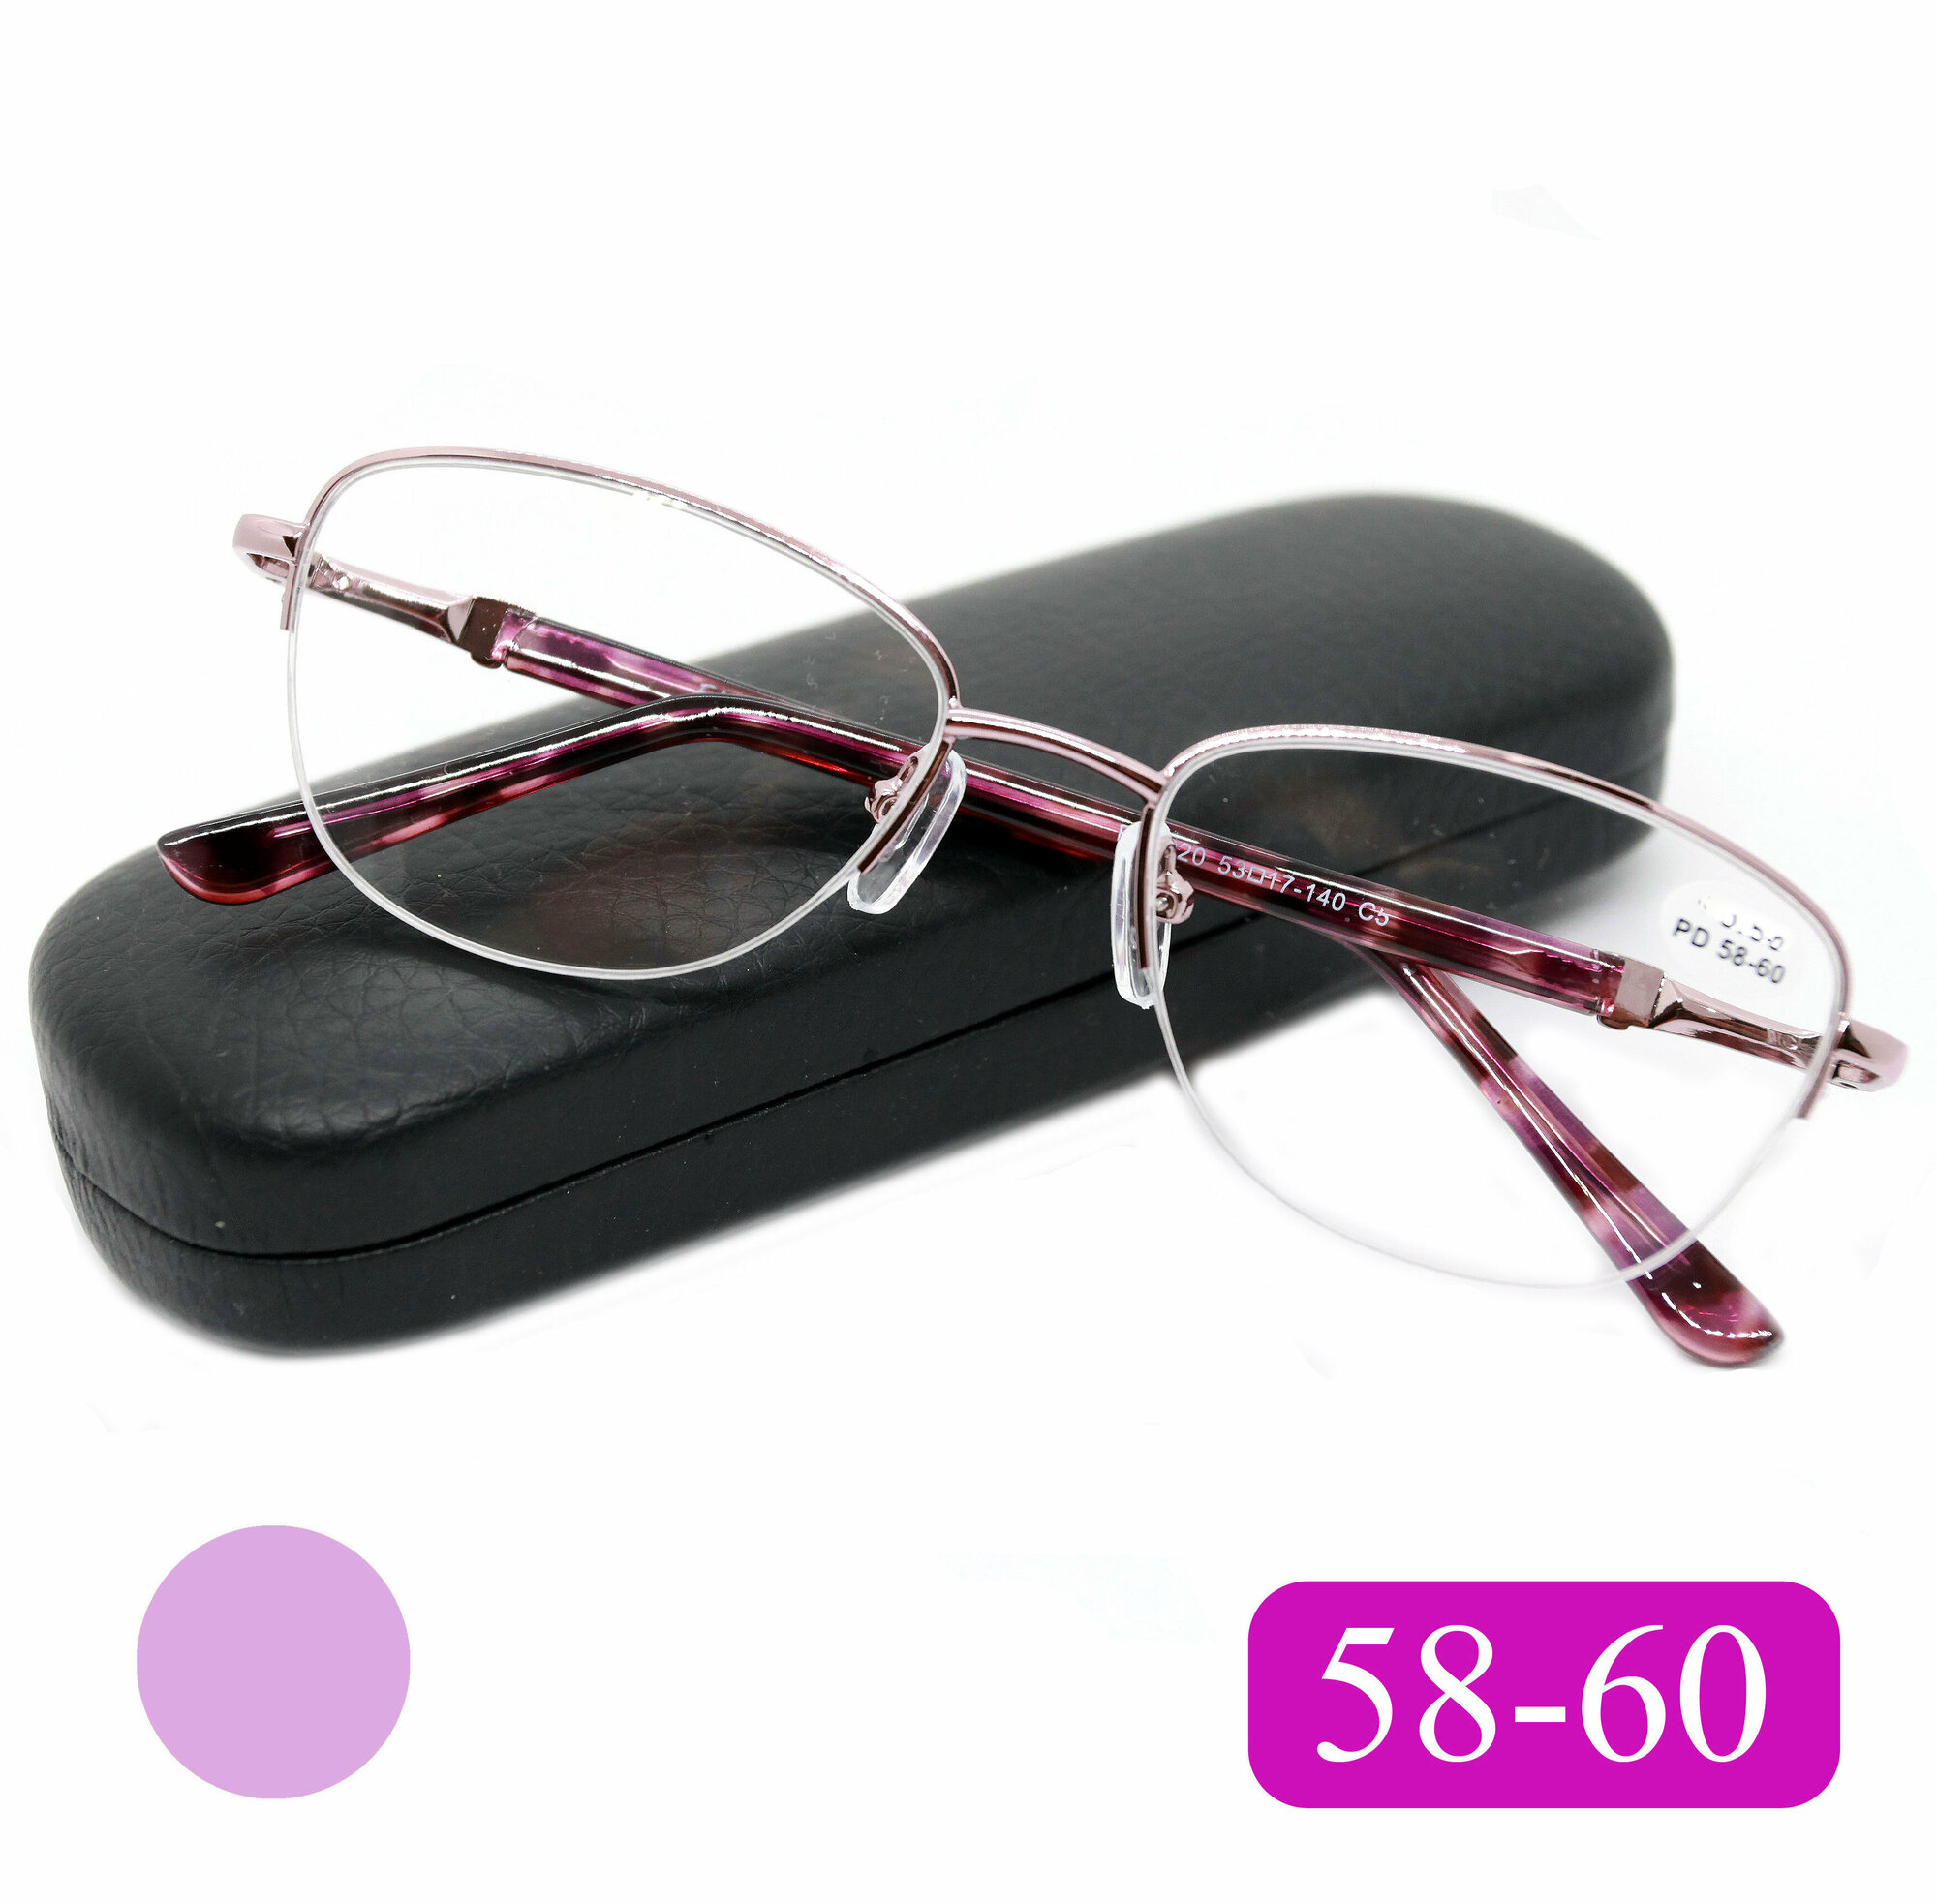 Готовые очки 58-60 из медицинской стали (+4.50) FABIA MONTI 8920 C5 цвет фиолетовый с футляром РЦ 58-60